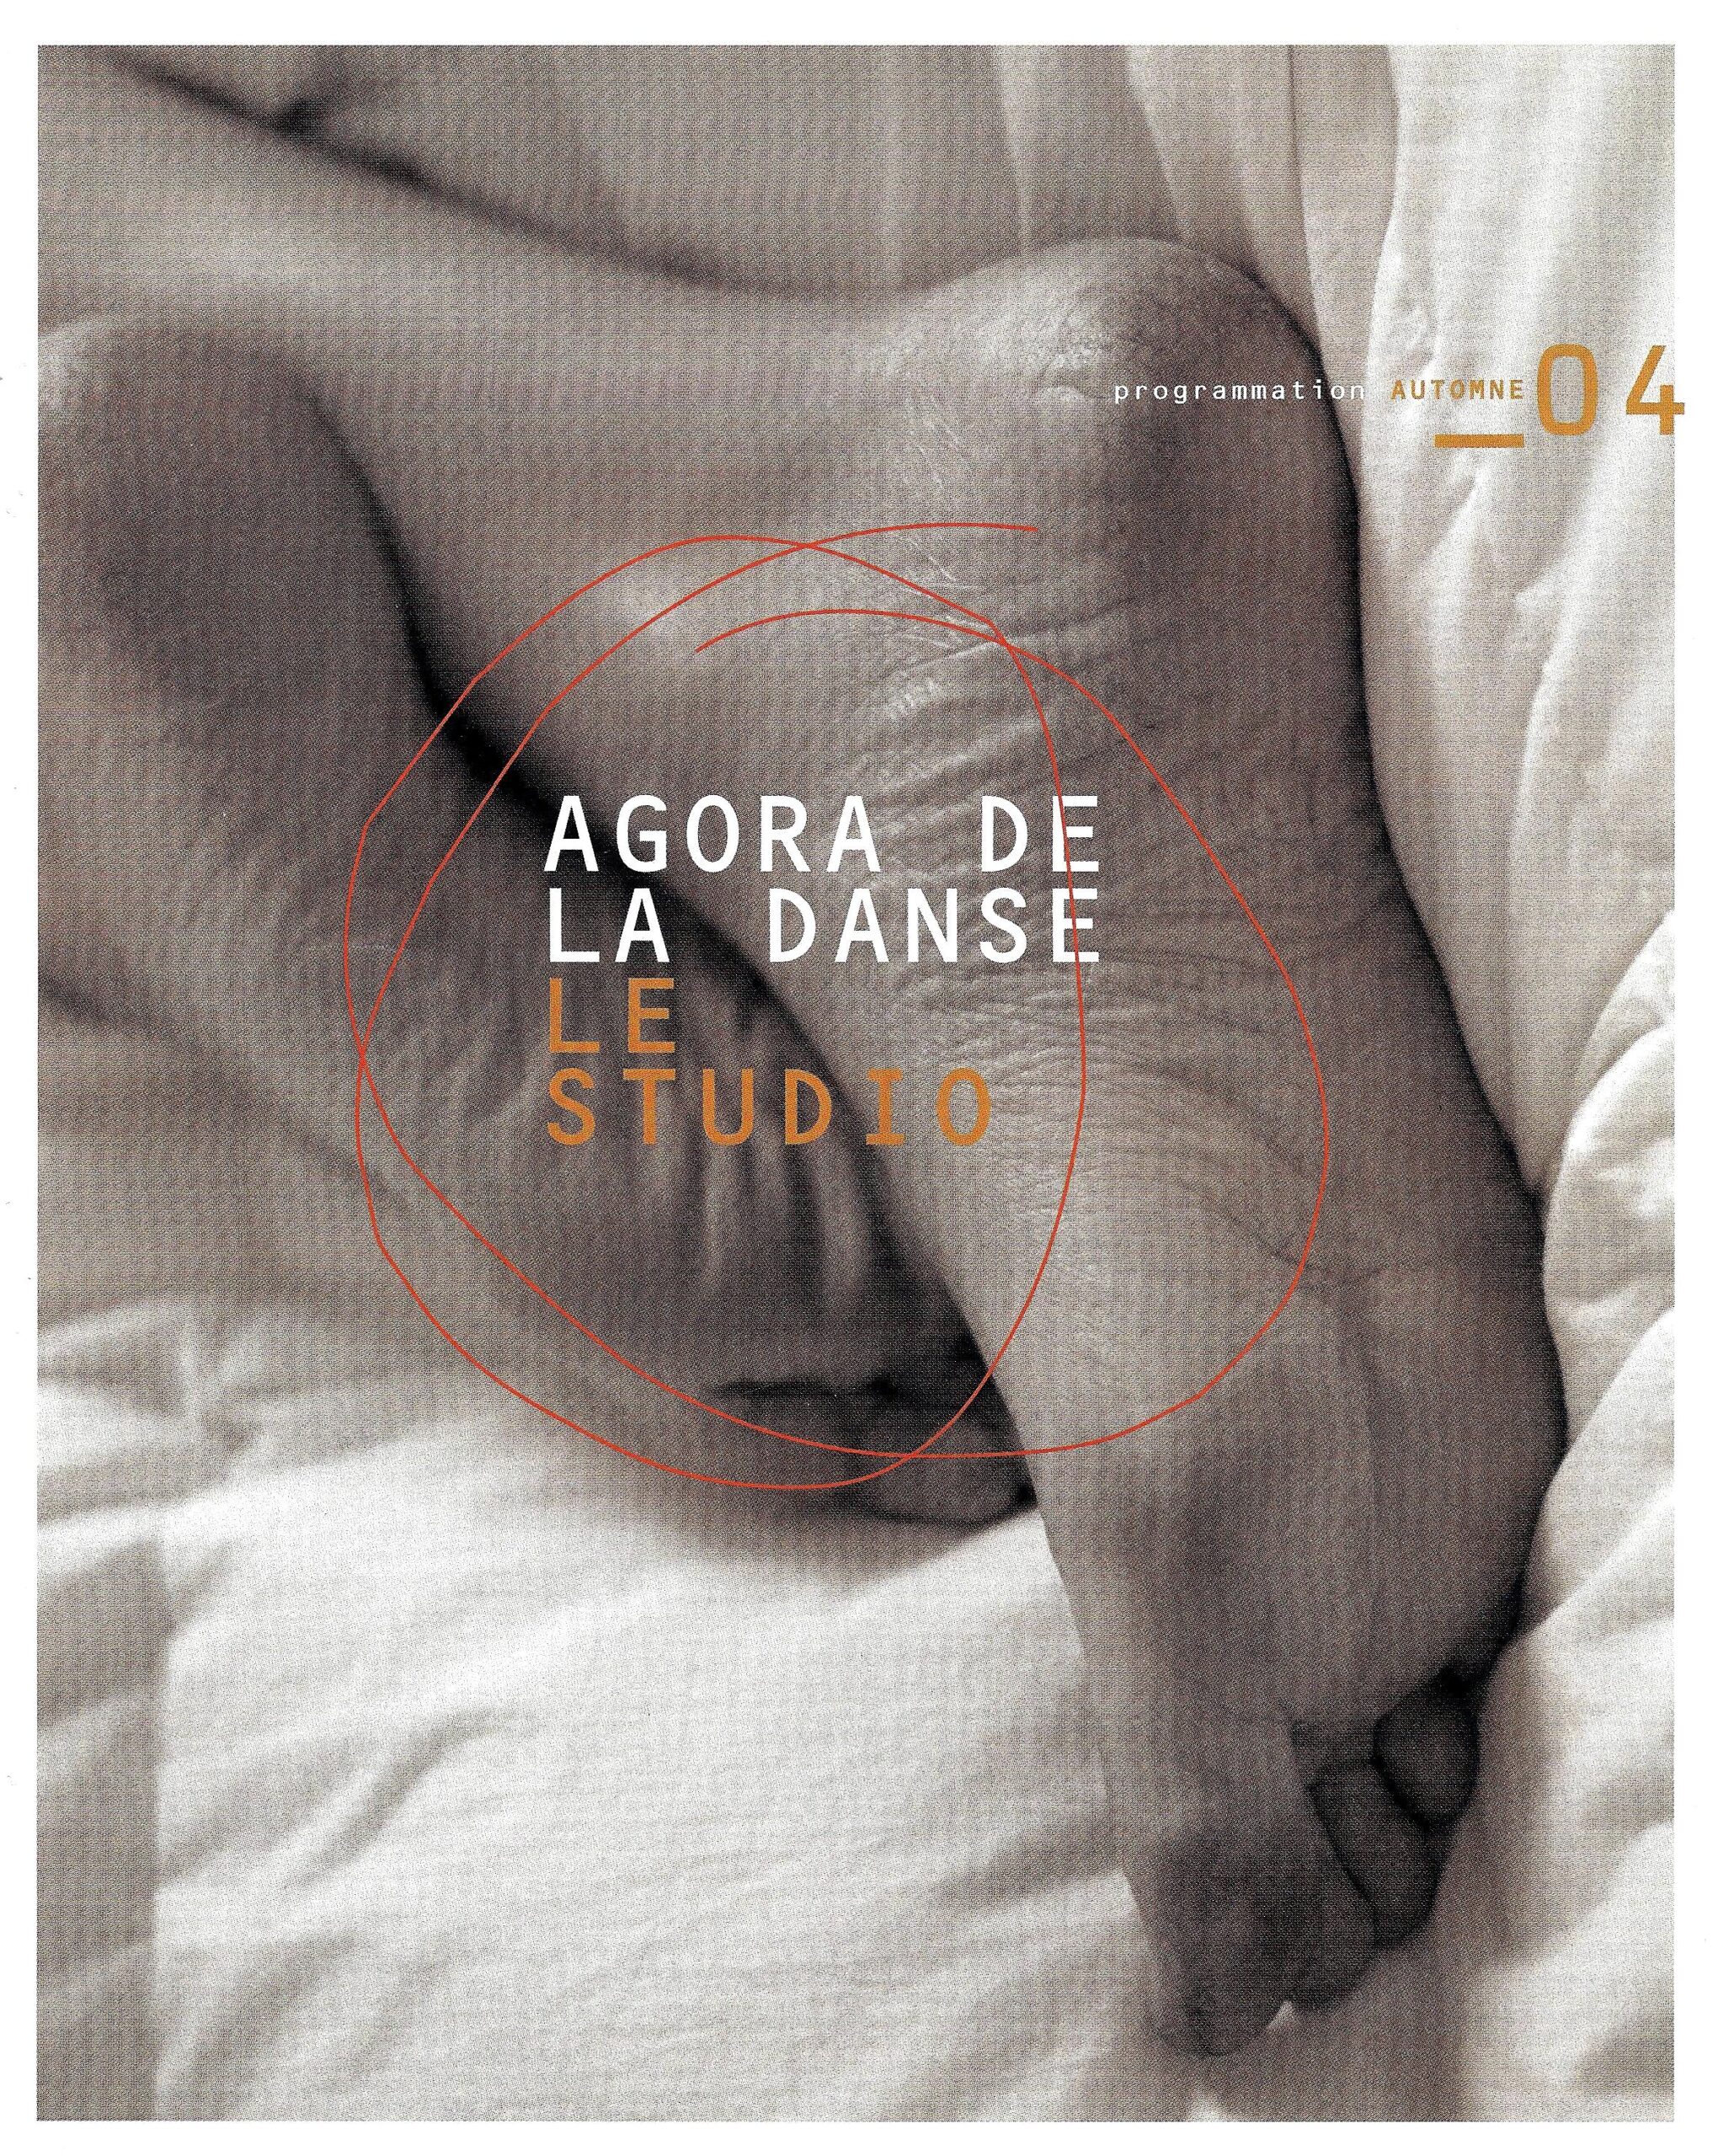 programme automne 2004 Agora de la danse